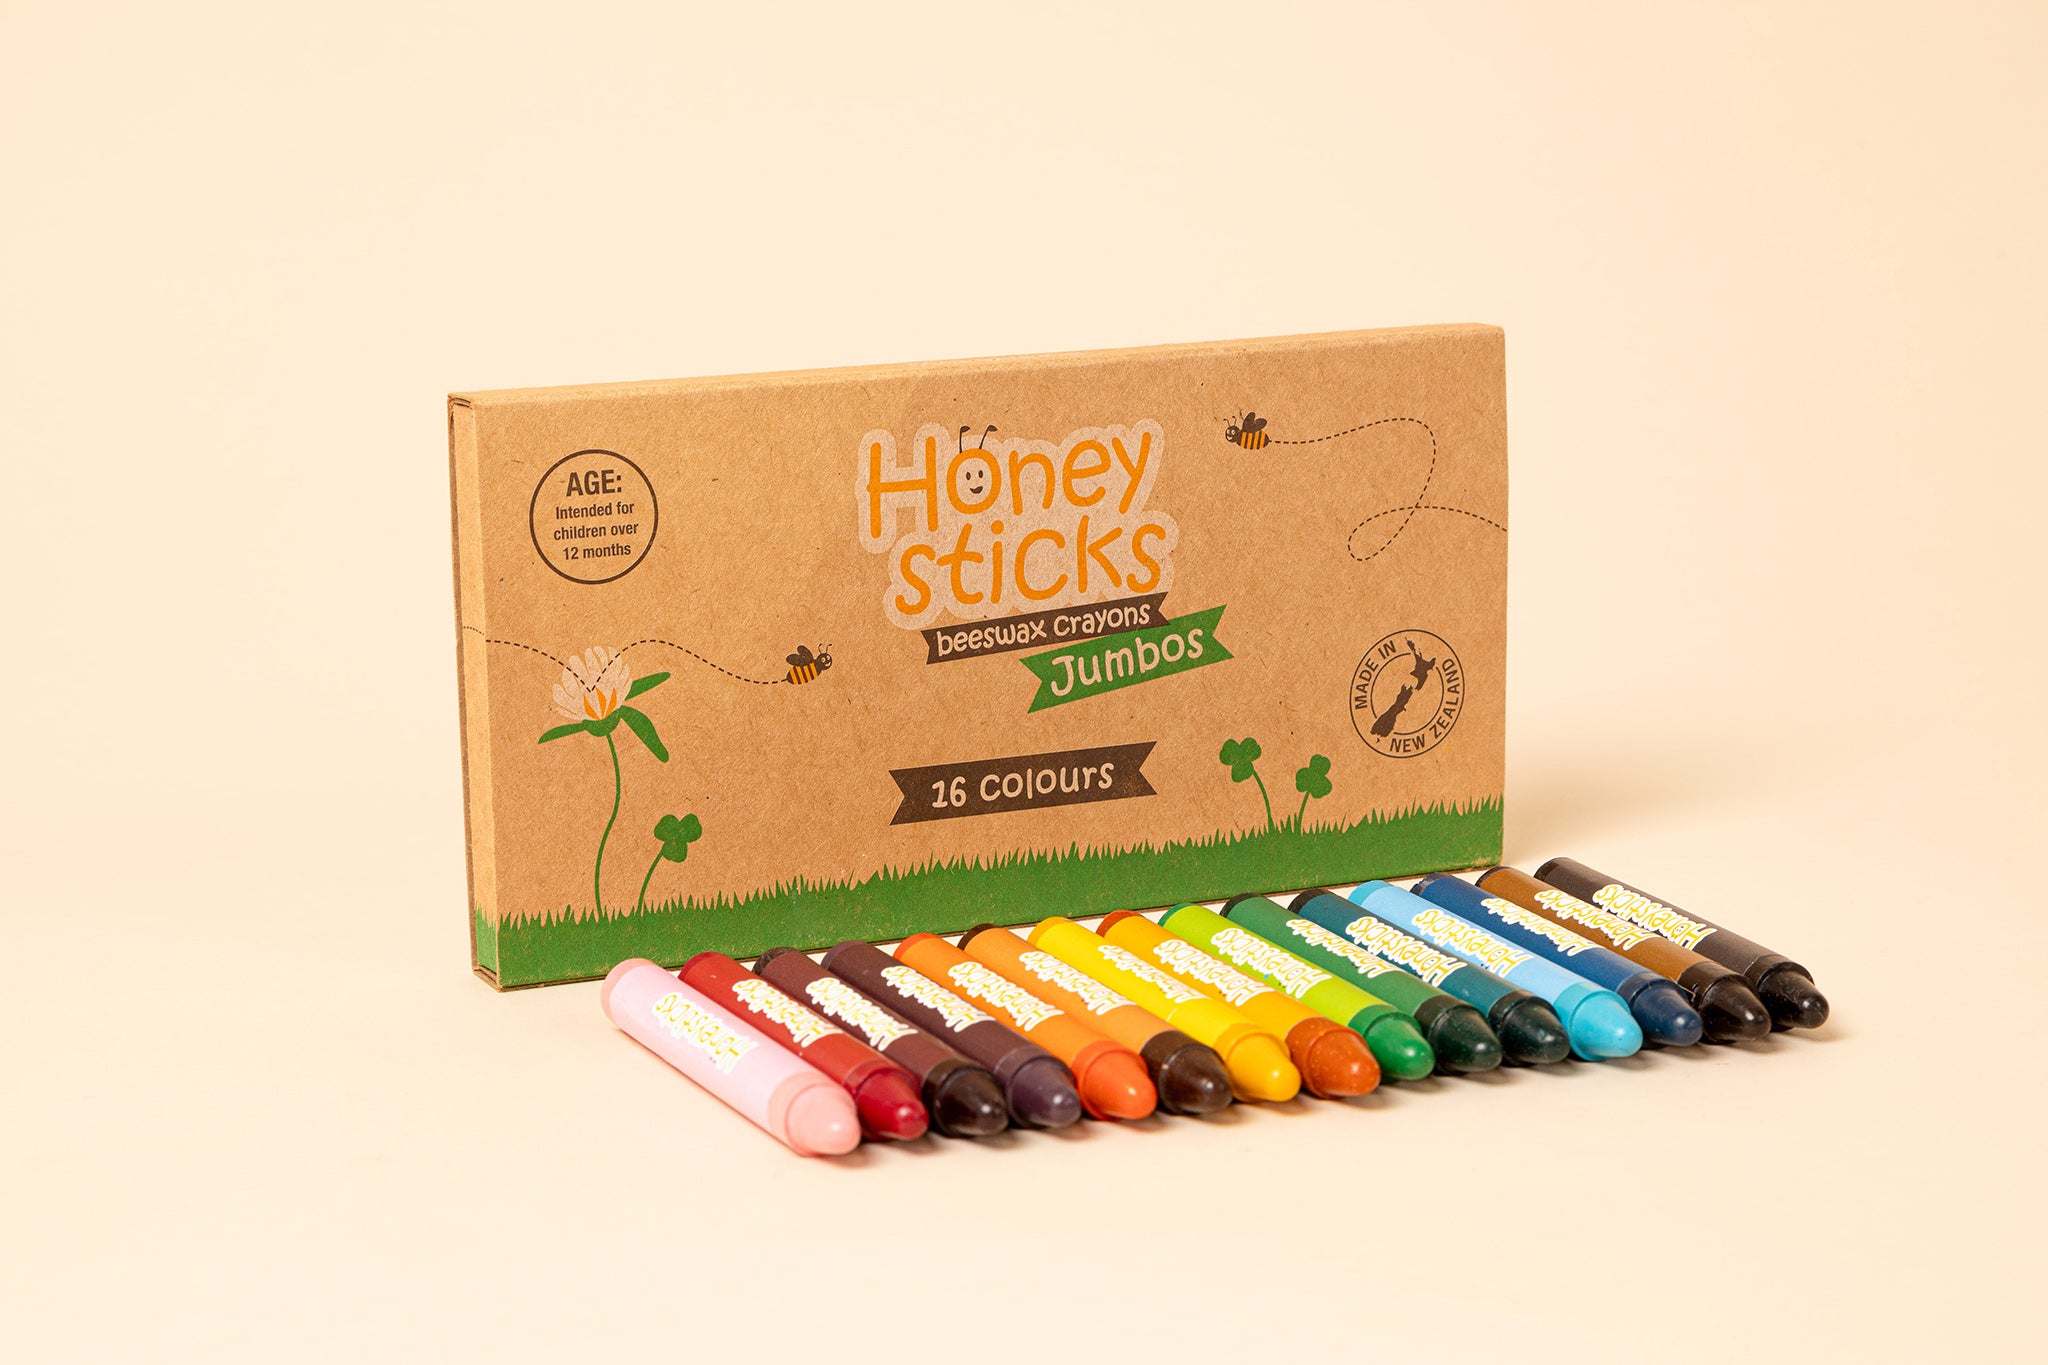 Honeysticks 100% Natural Beeswax Crayons - Jumbo Size Crayons for